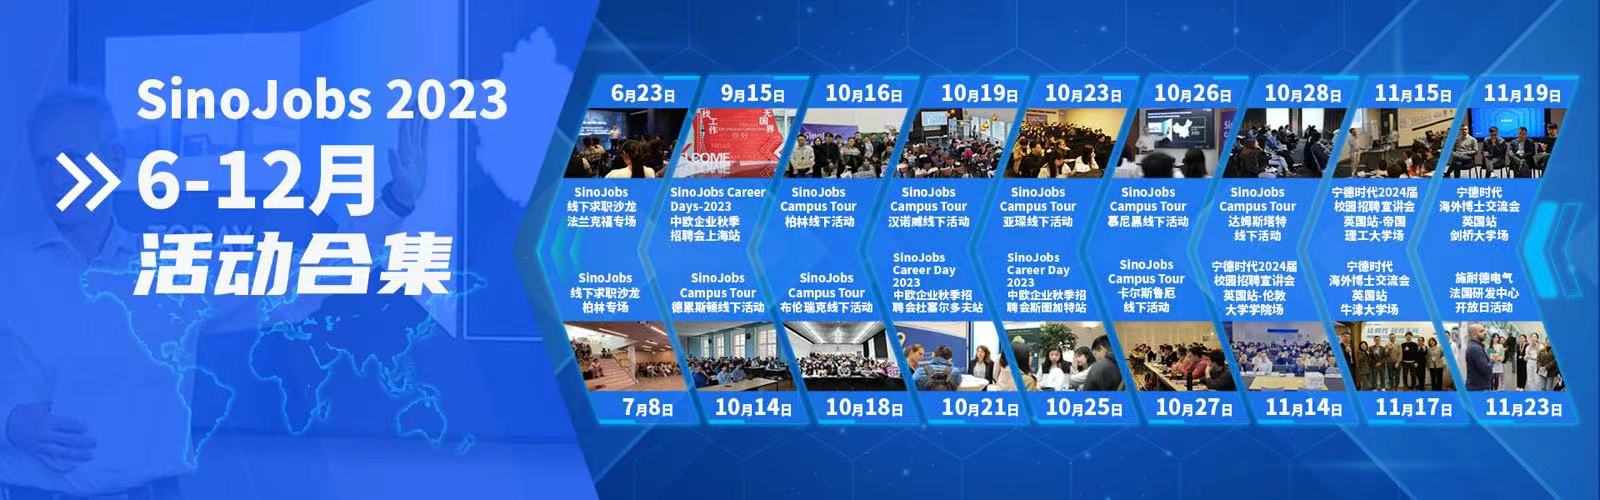 Rückblick auf die SinoJobs Veranstaltungen in der zweiten Hälfte des Jahres 2023